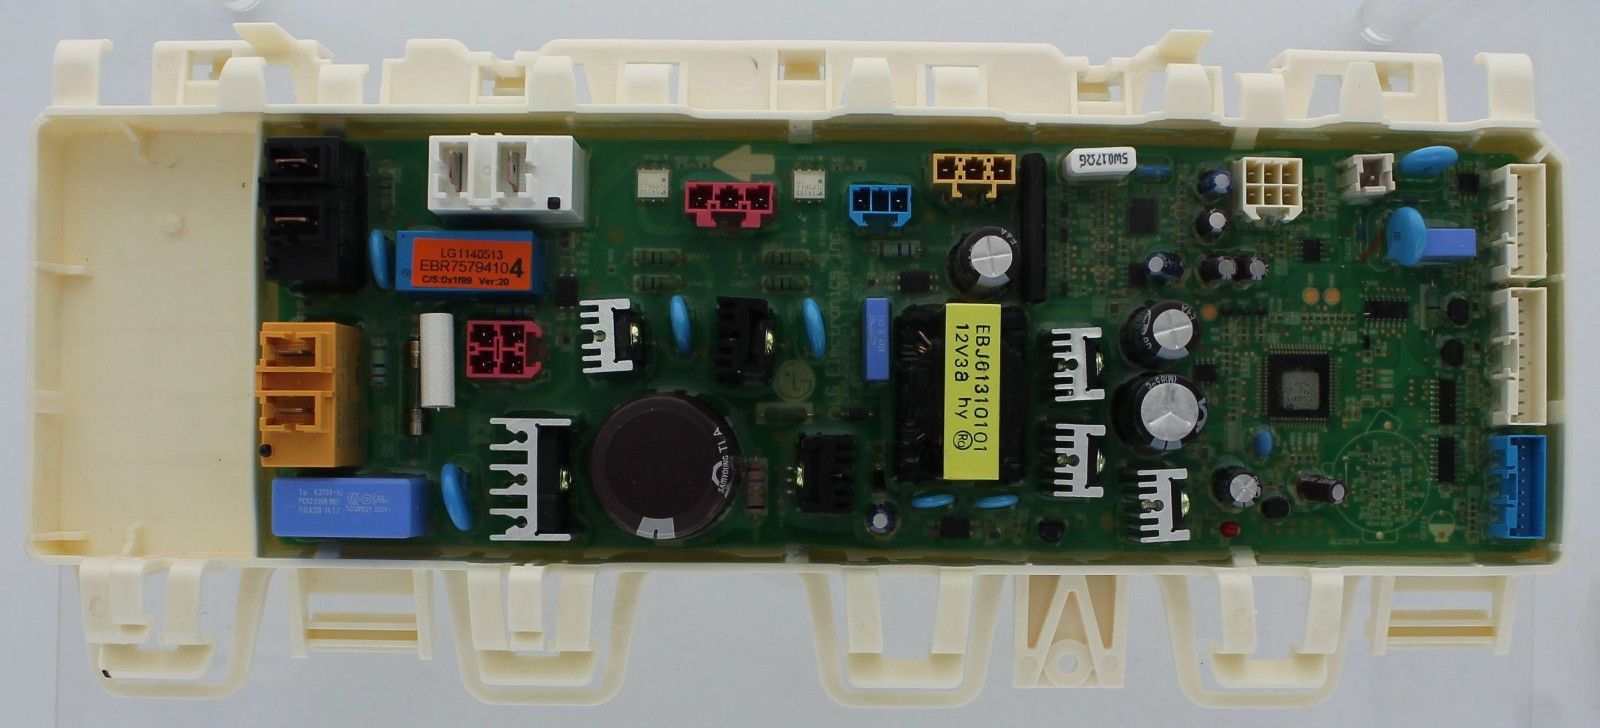 Elektronika, řídící modul sušiček prádla LG - EBR75794105 LG náhradní díly